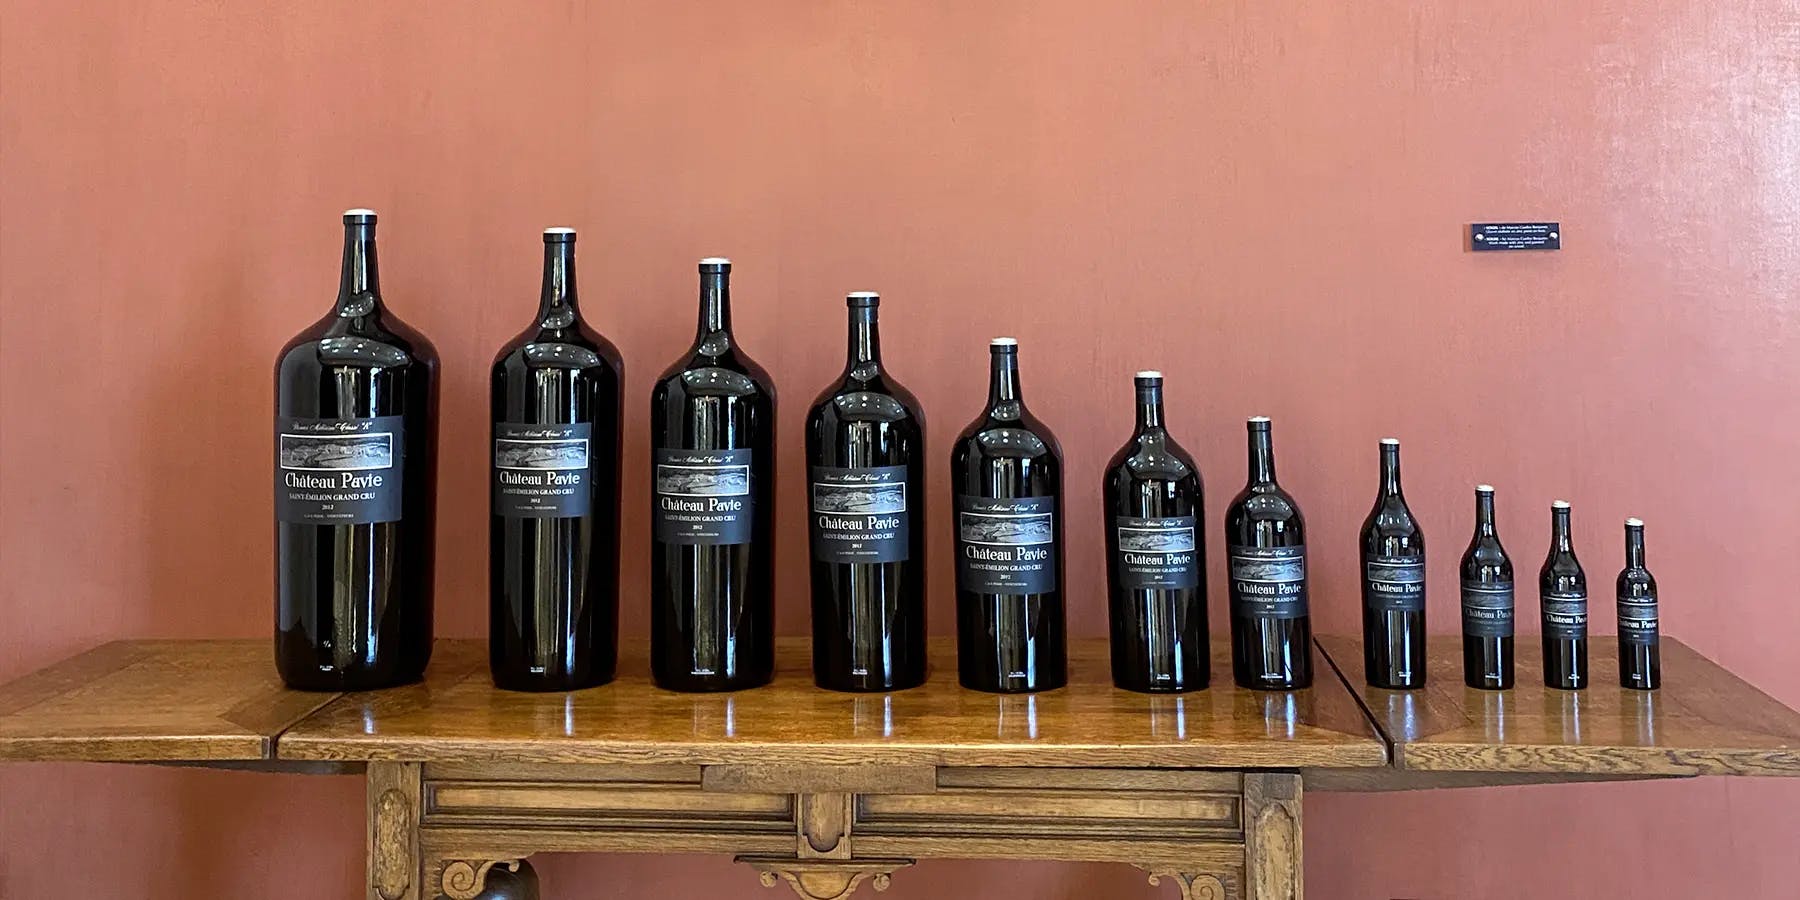 Les différents formats des bouteilles de vin